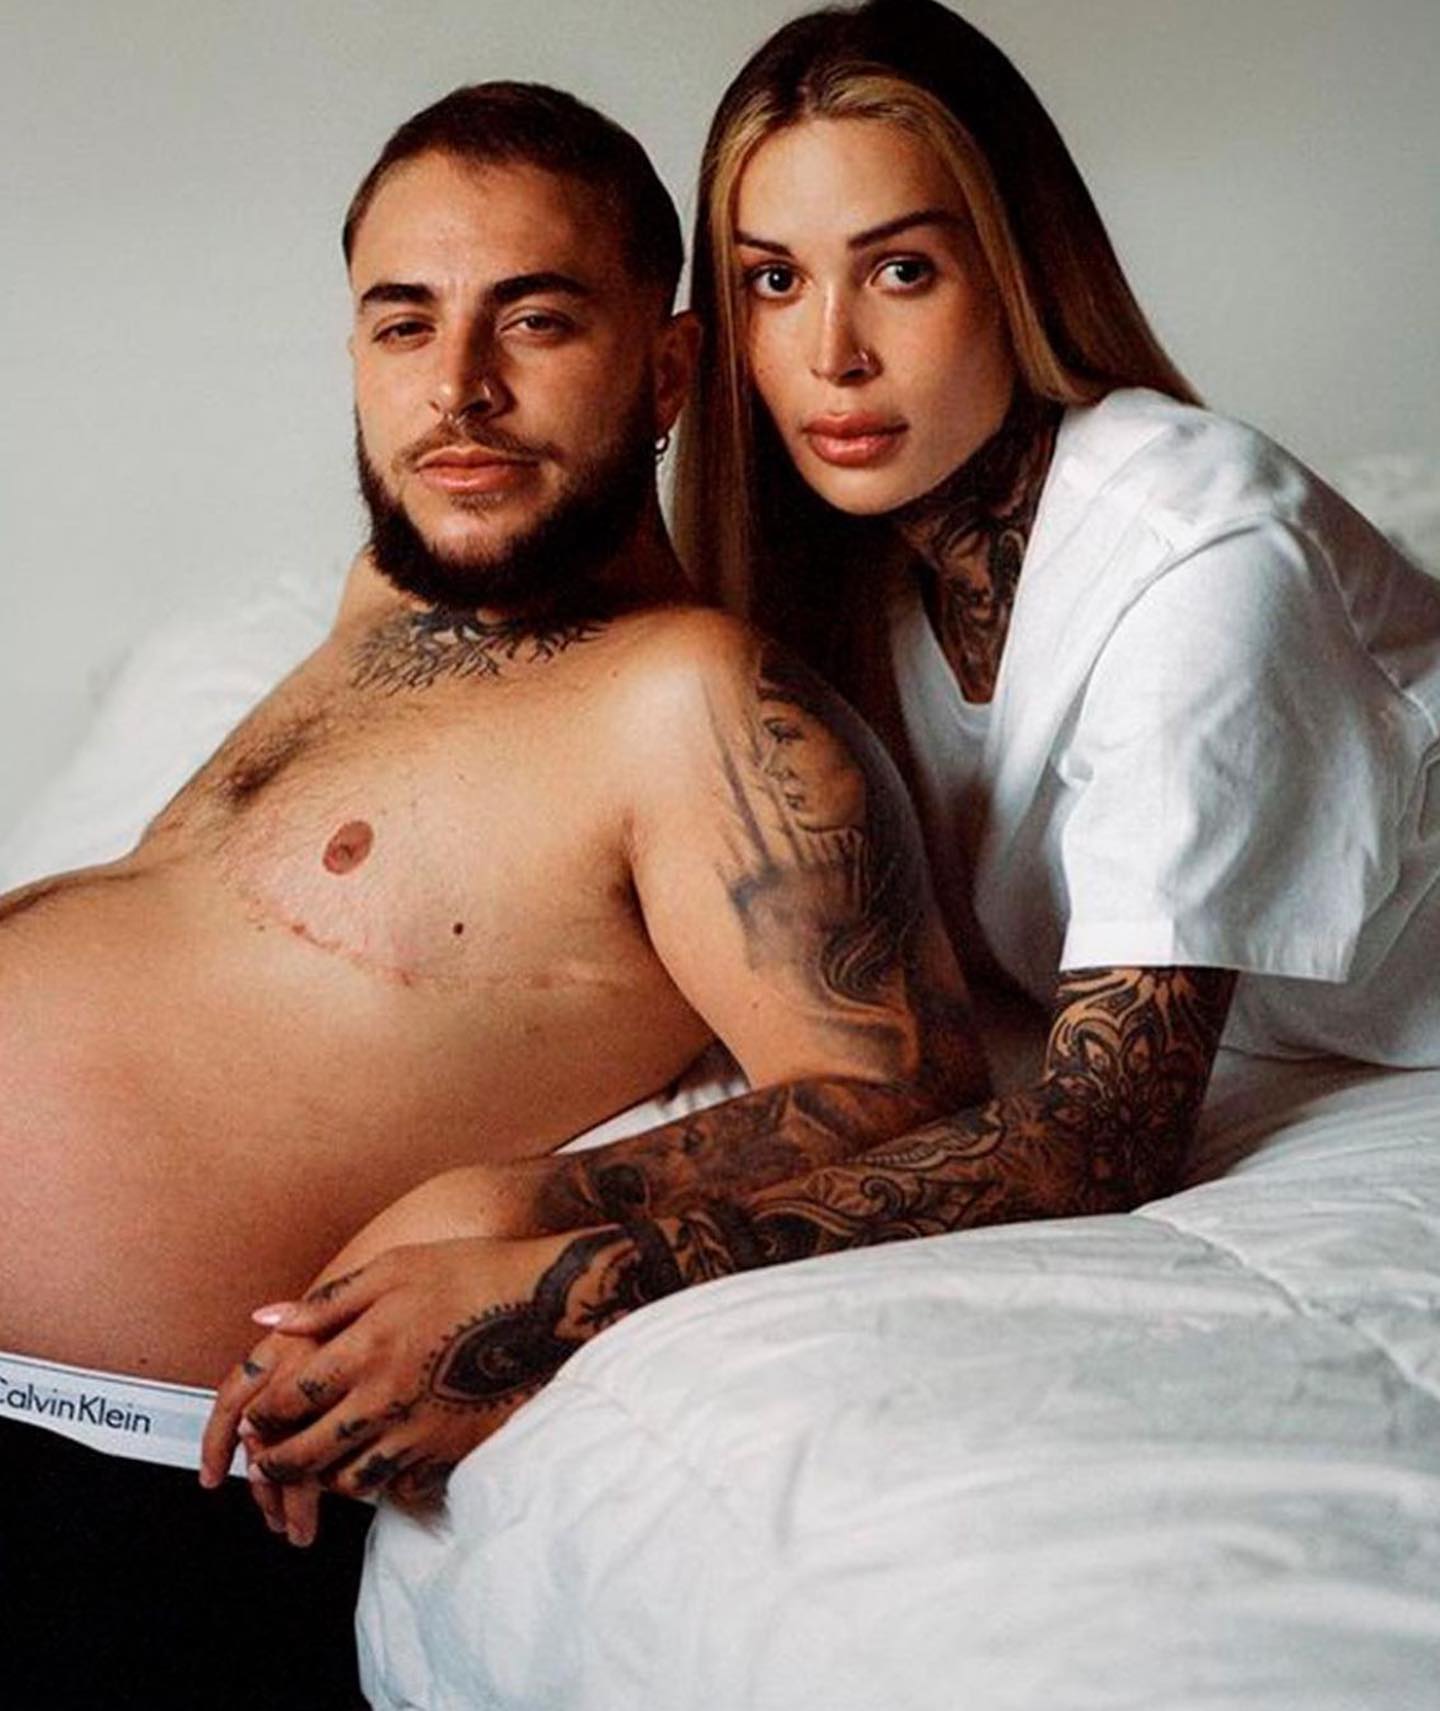 تبلیغات جدید برند Calvin Klein با  مرد حامله